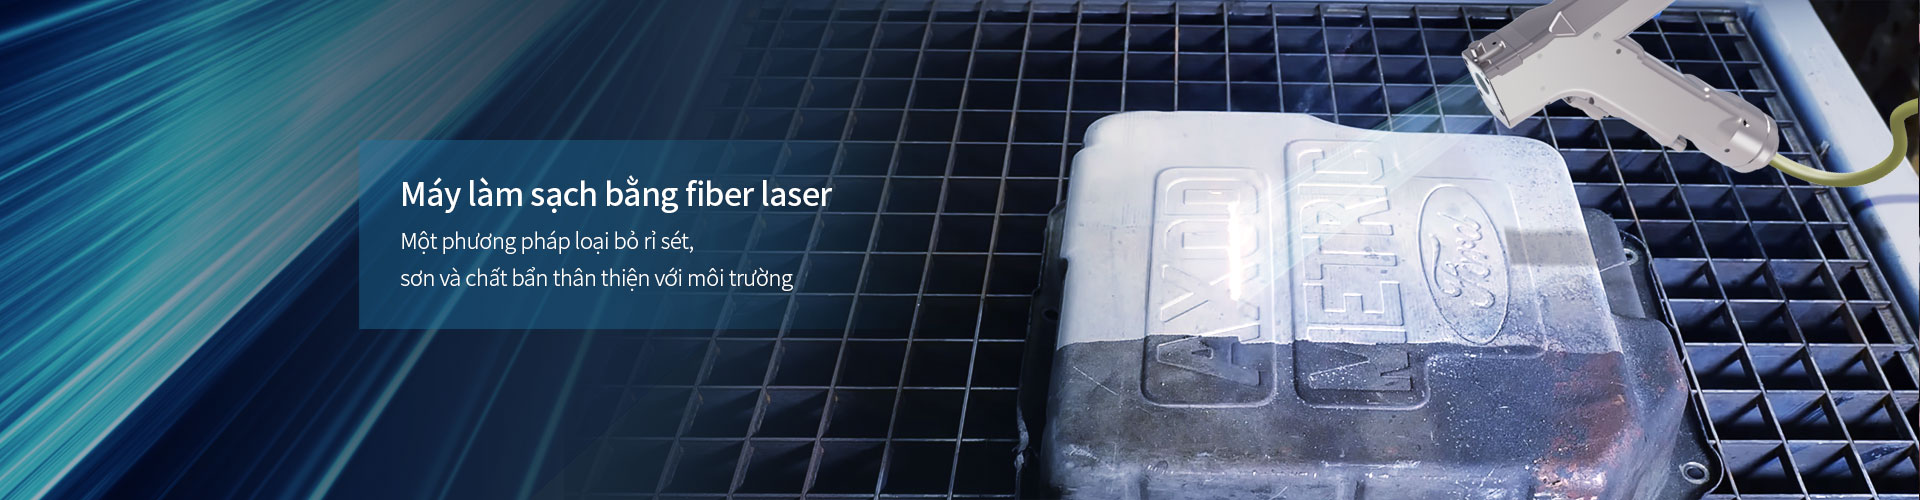 máy cắt laser